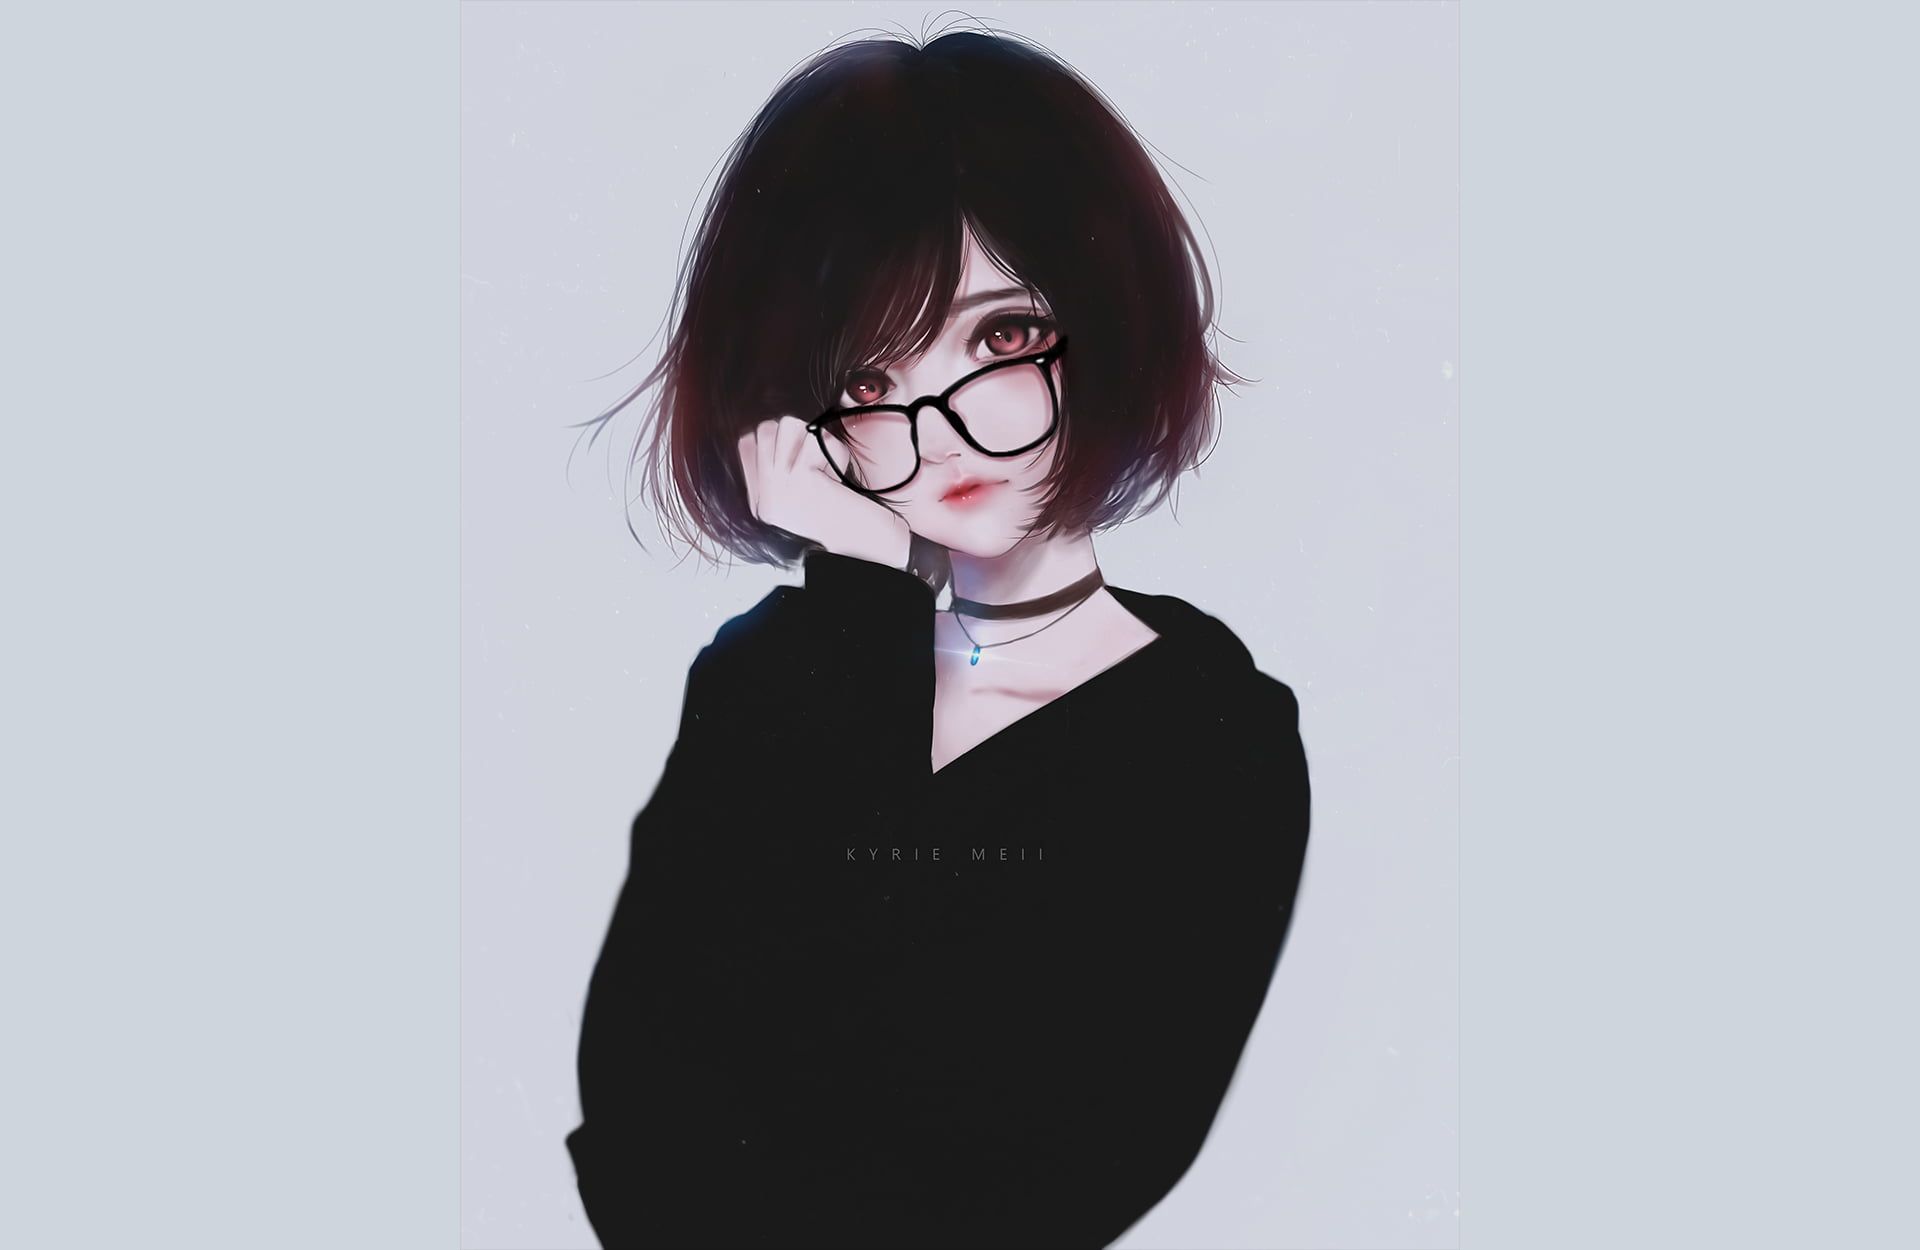 Black Haired Female Anime Character Digital Wallpaper, Anime